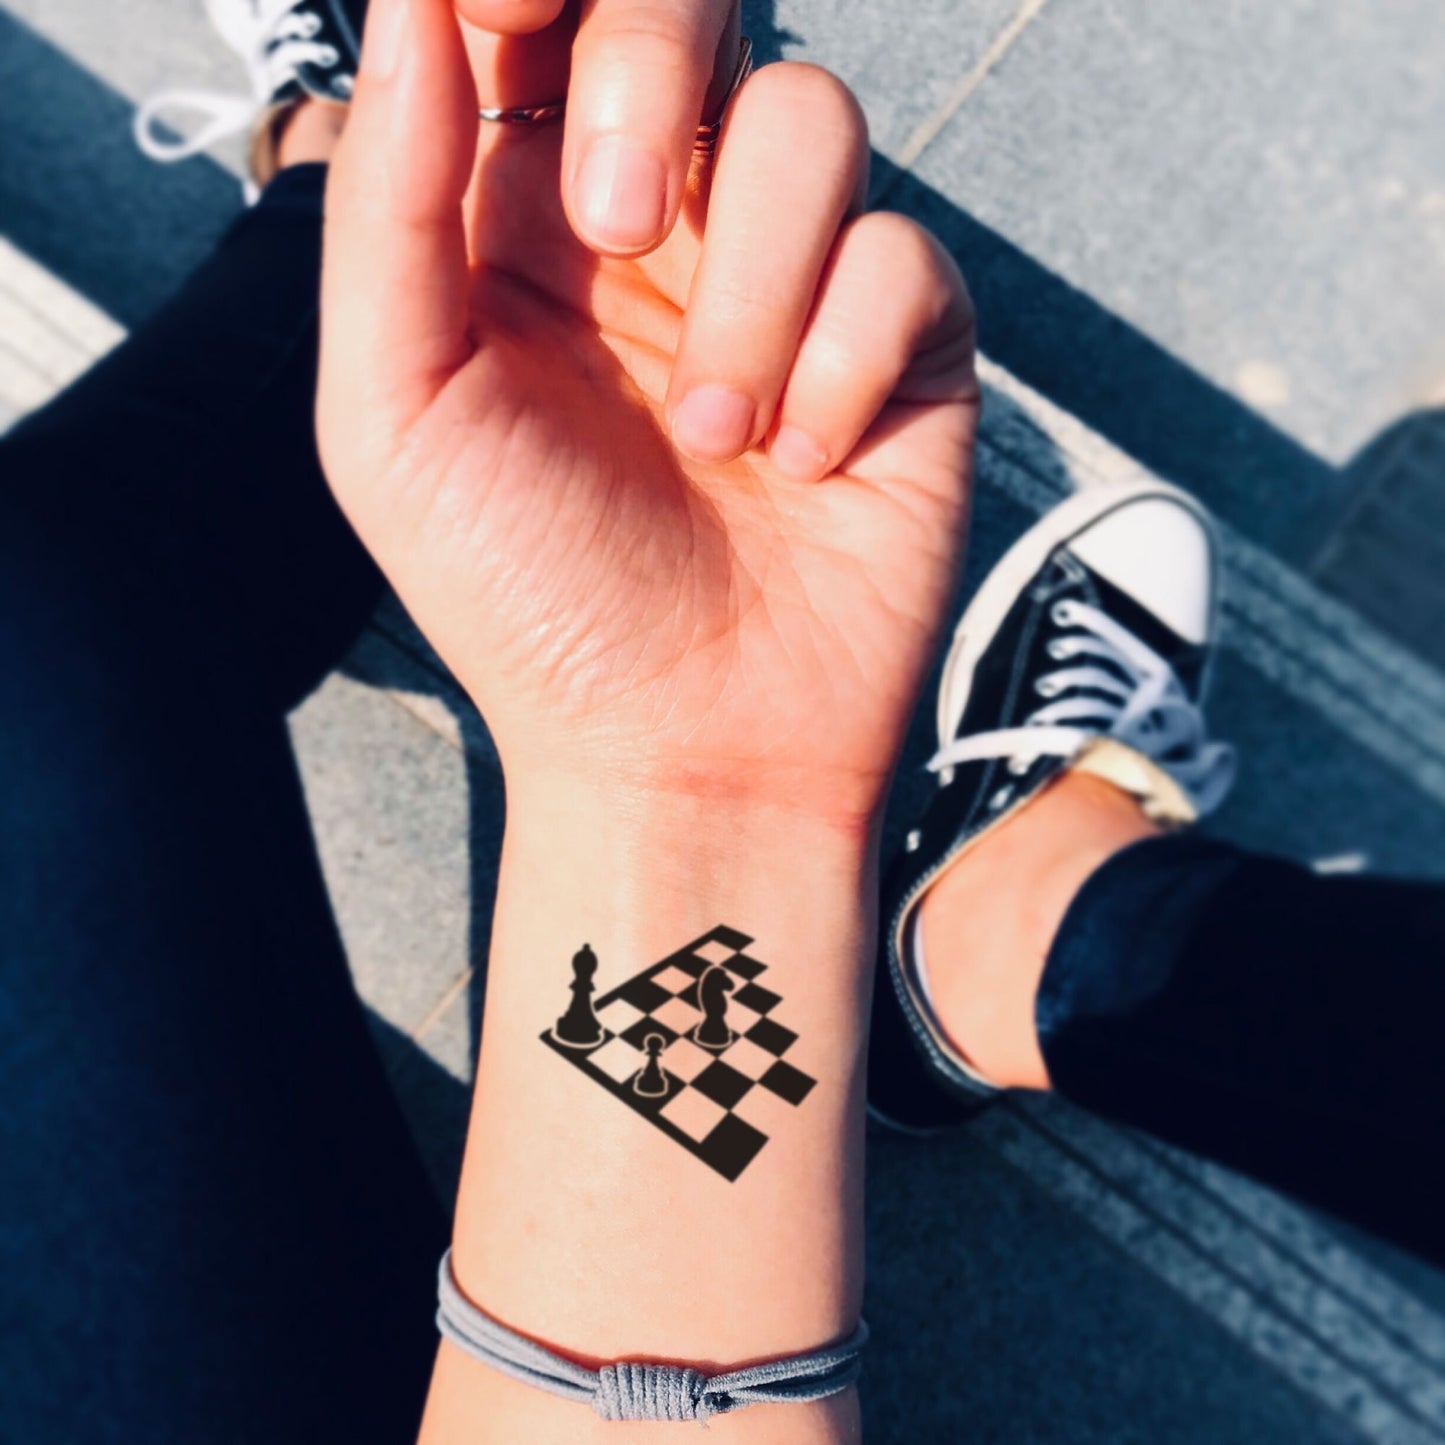 fake small chess board illustrative temporary tattoo sticker design idea on wrist